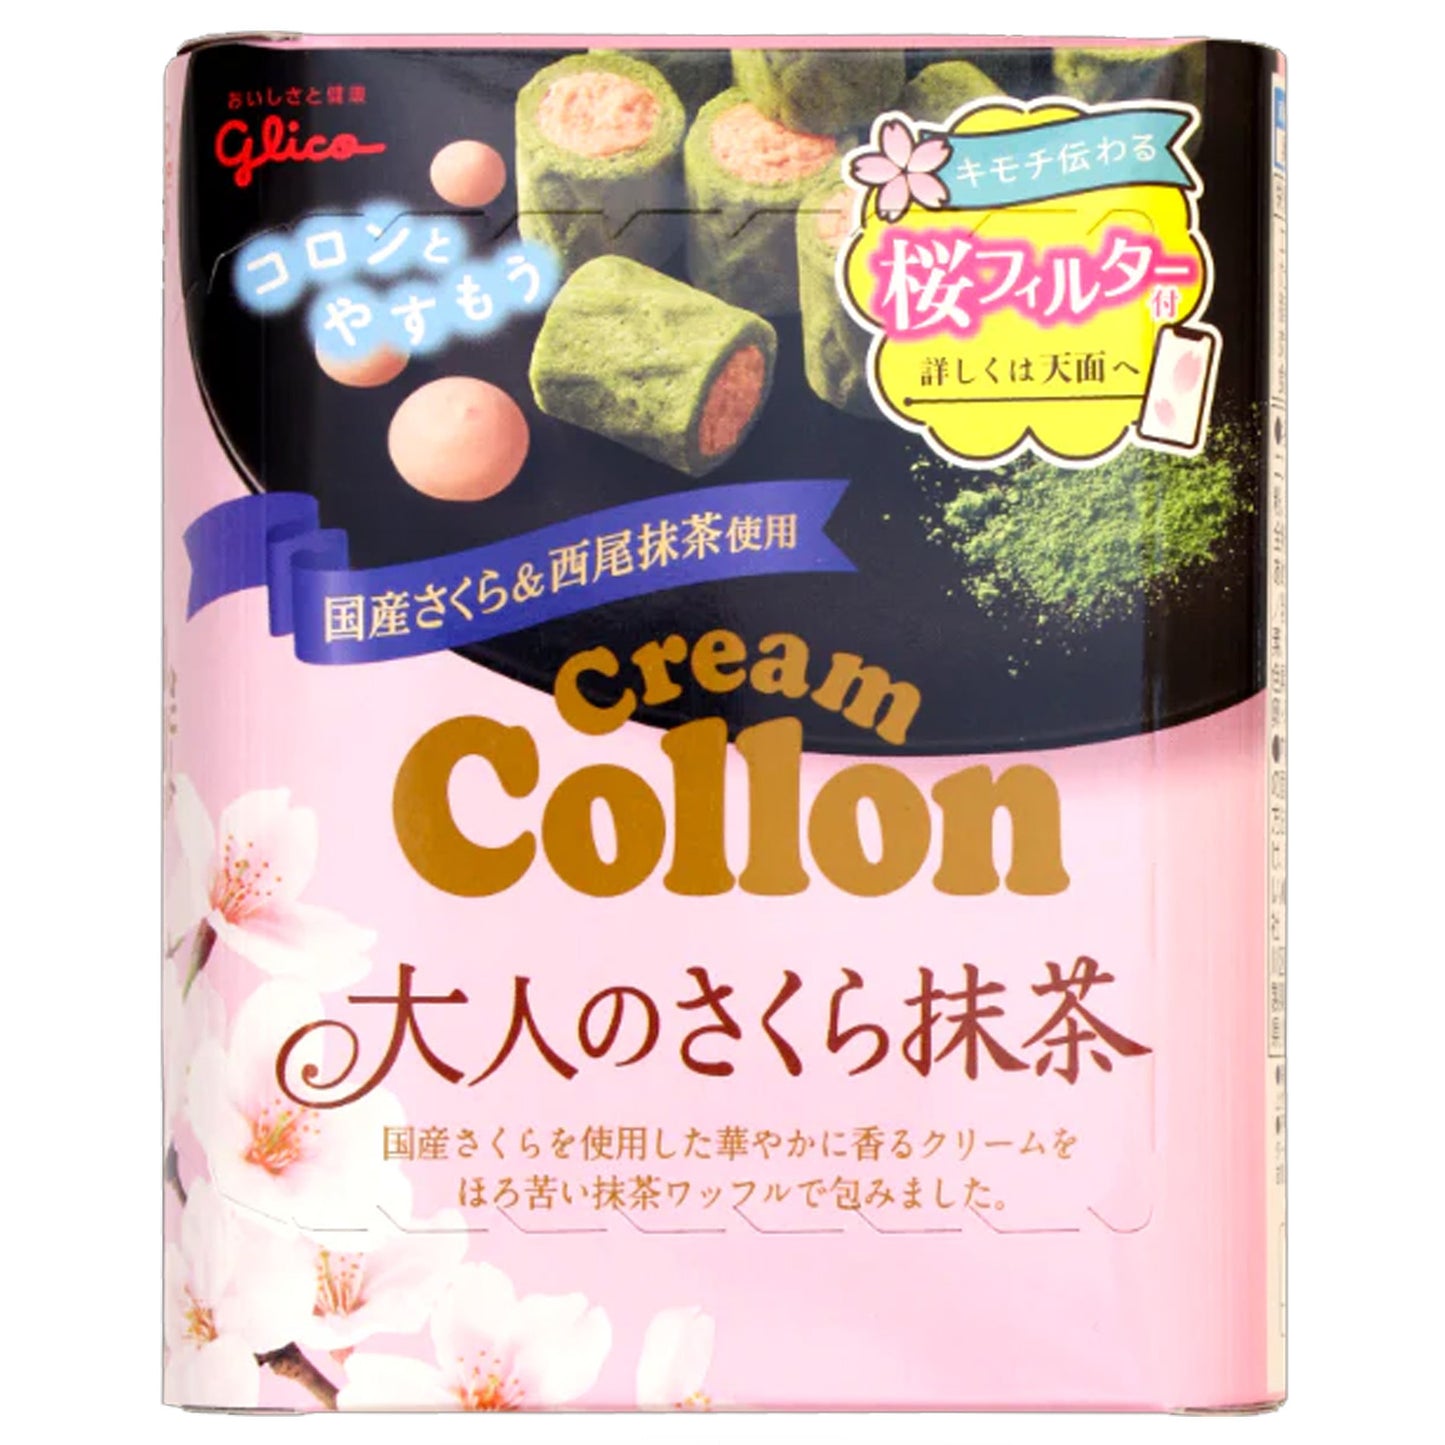 Glico Cream Collon Sakura | 10 x 48g